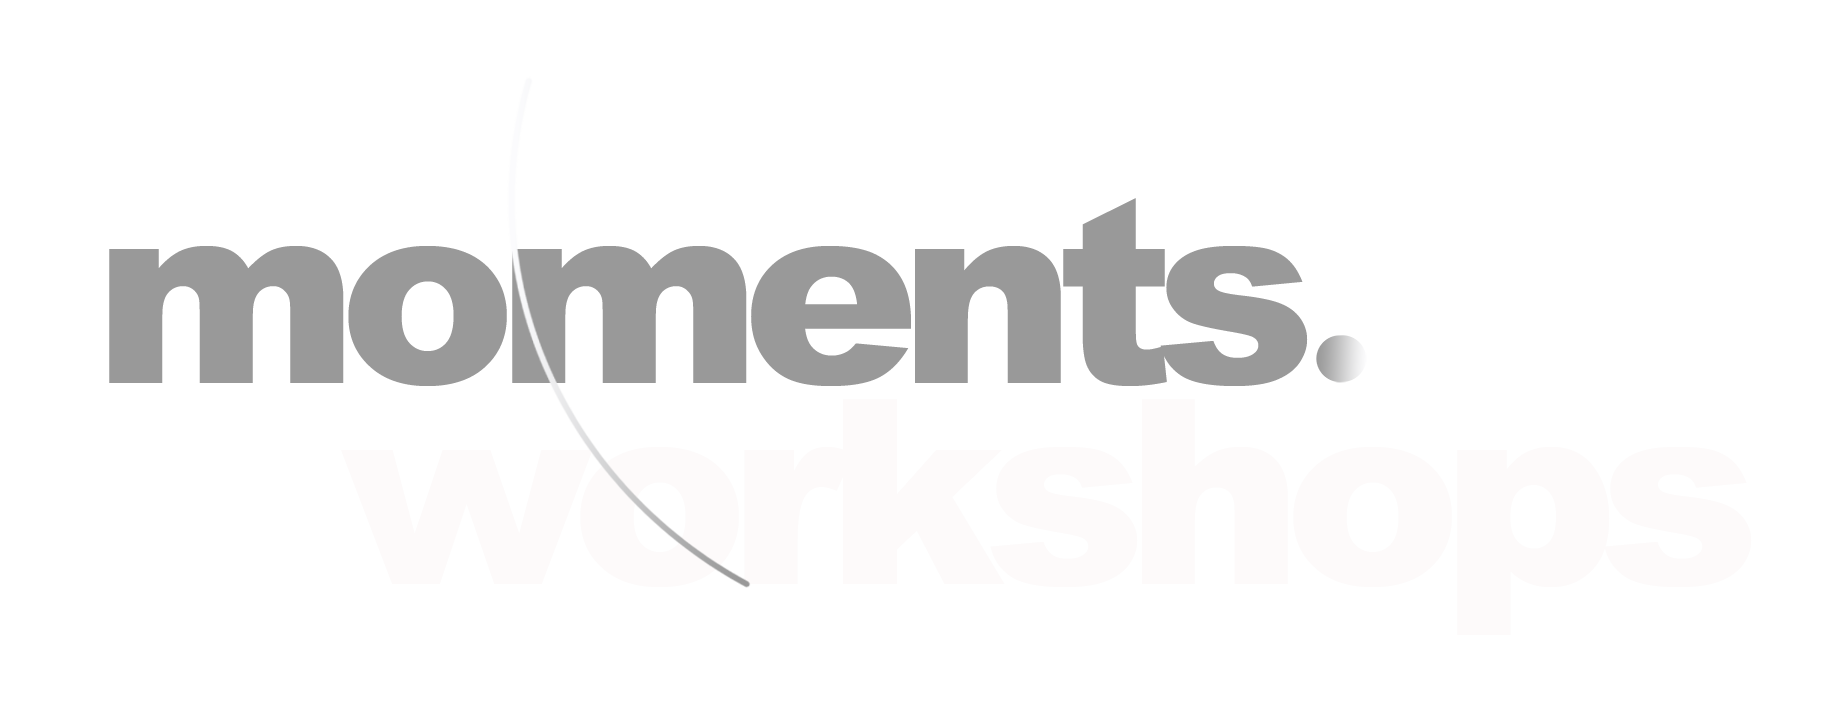 Moments Workshops